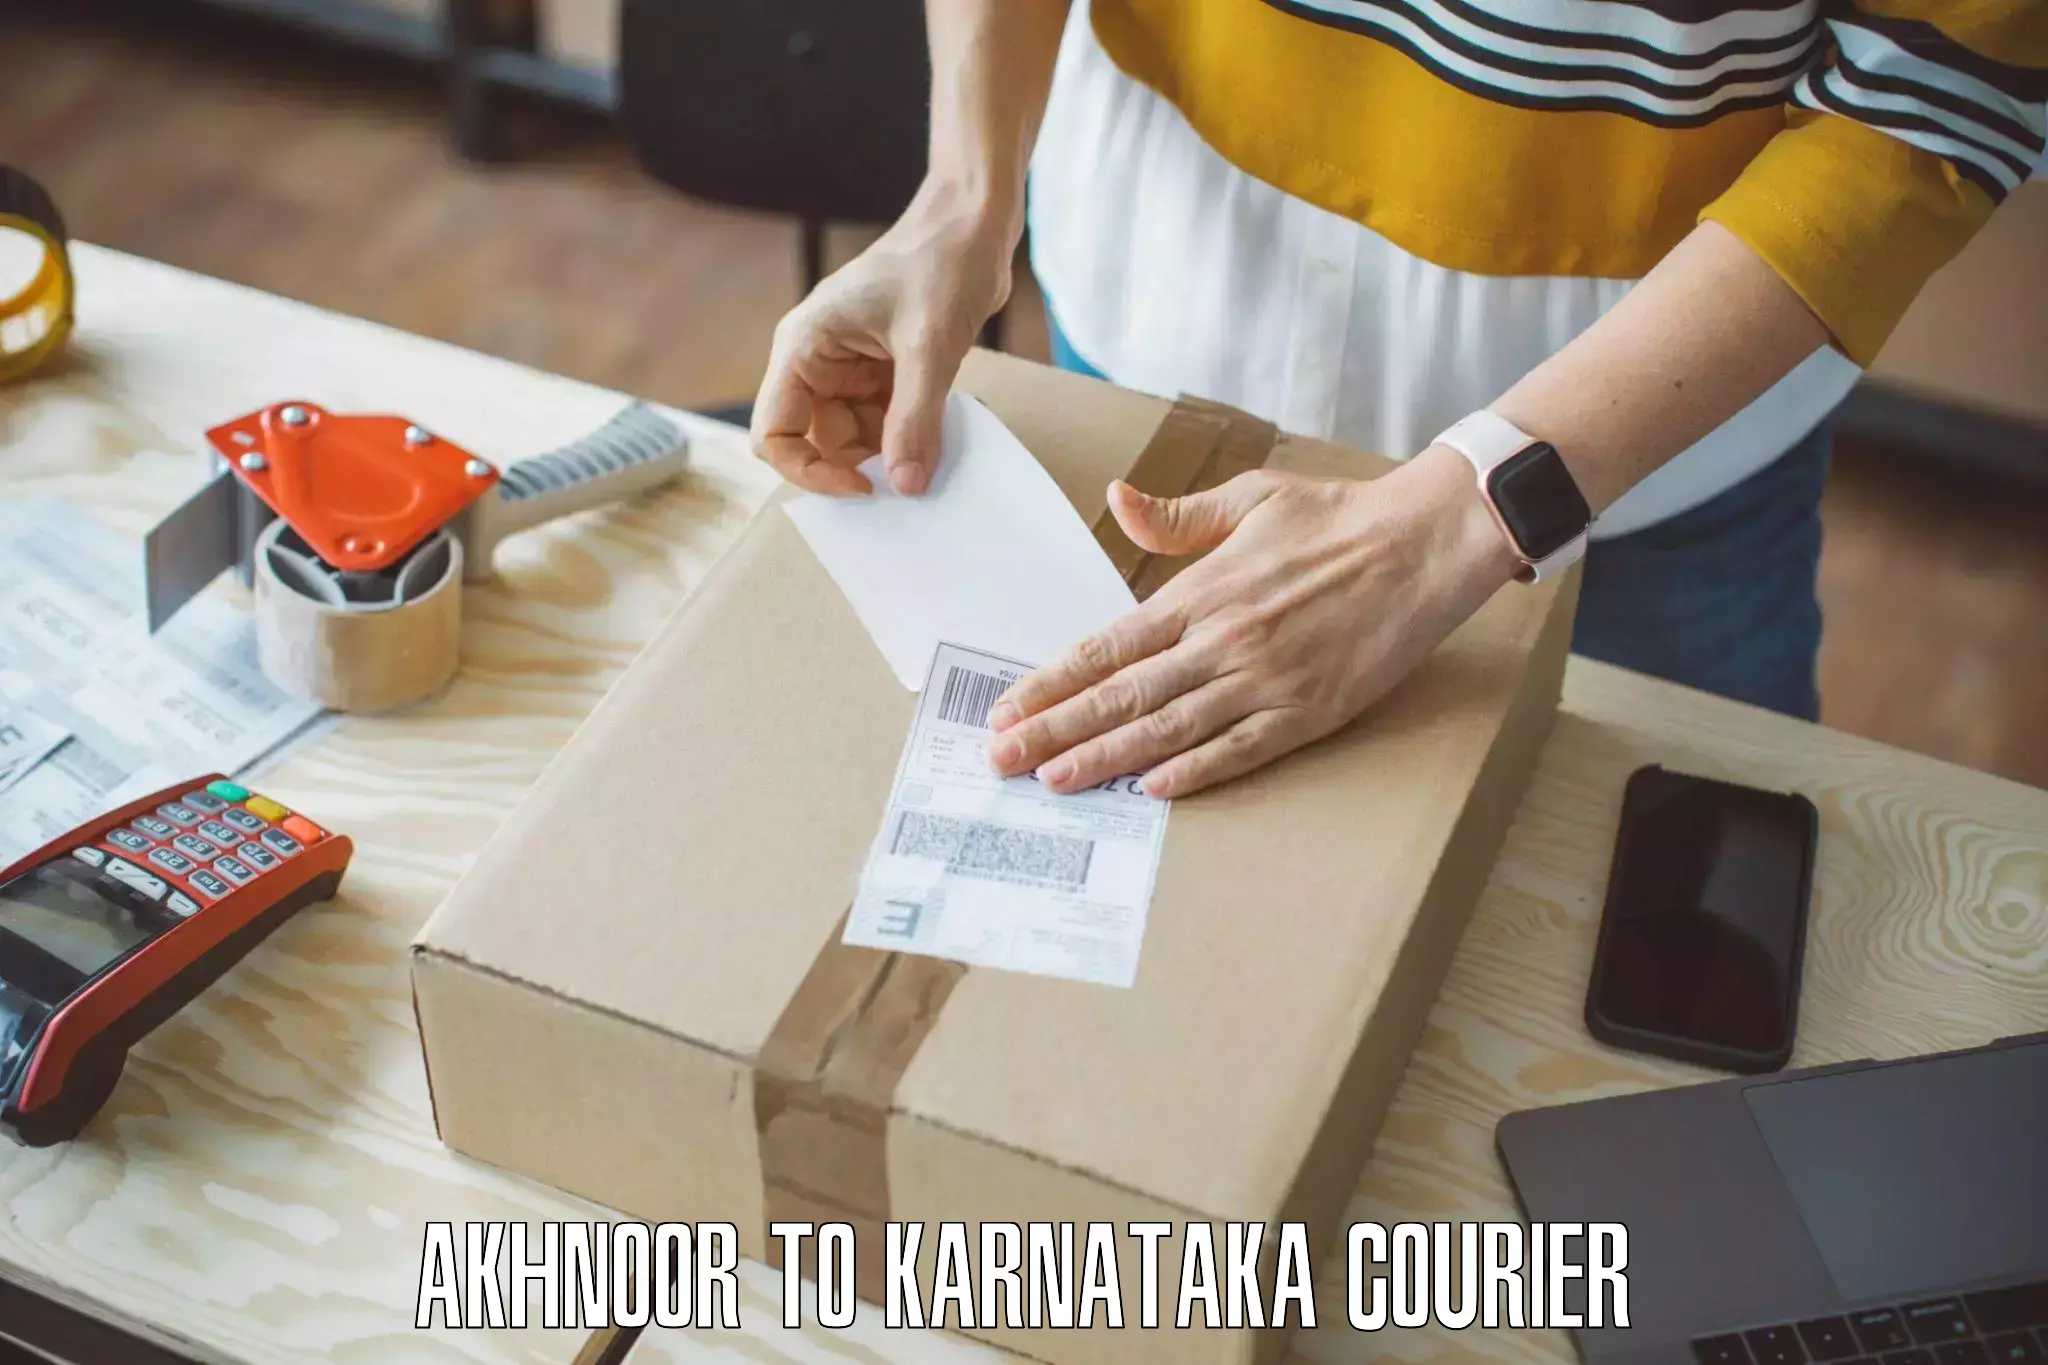 Quality moving company Akhnoor to Karnataka